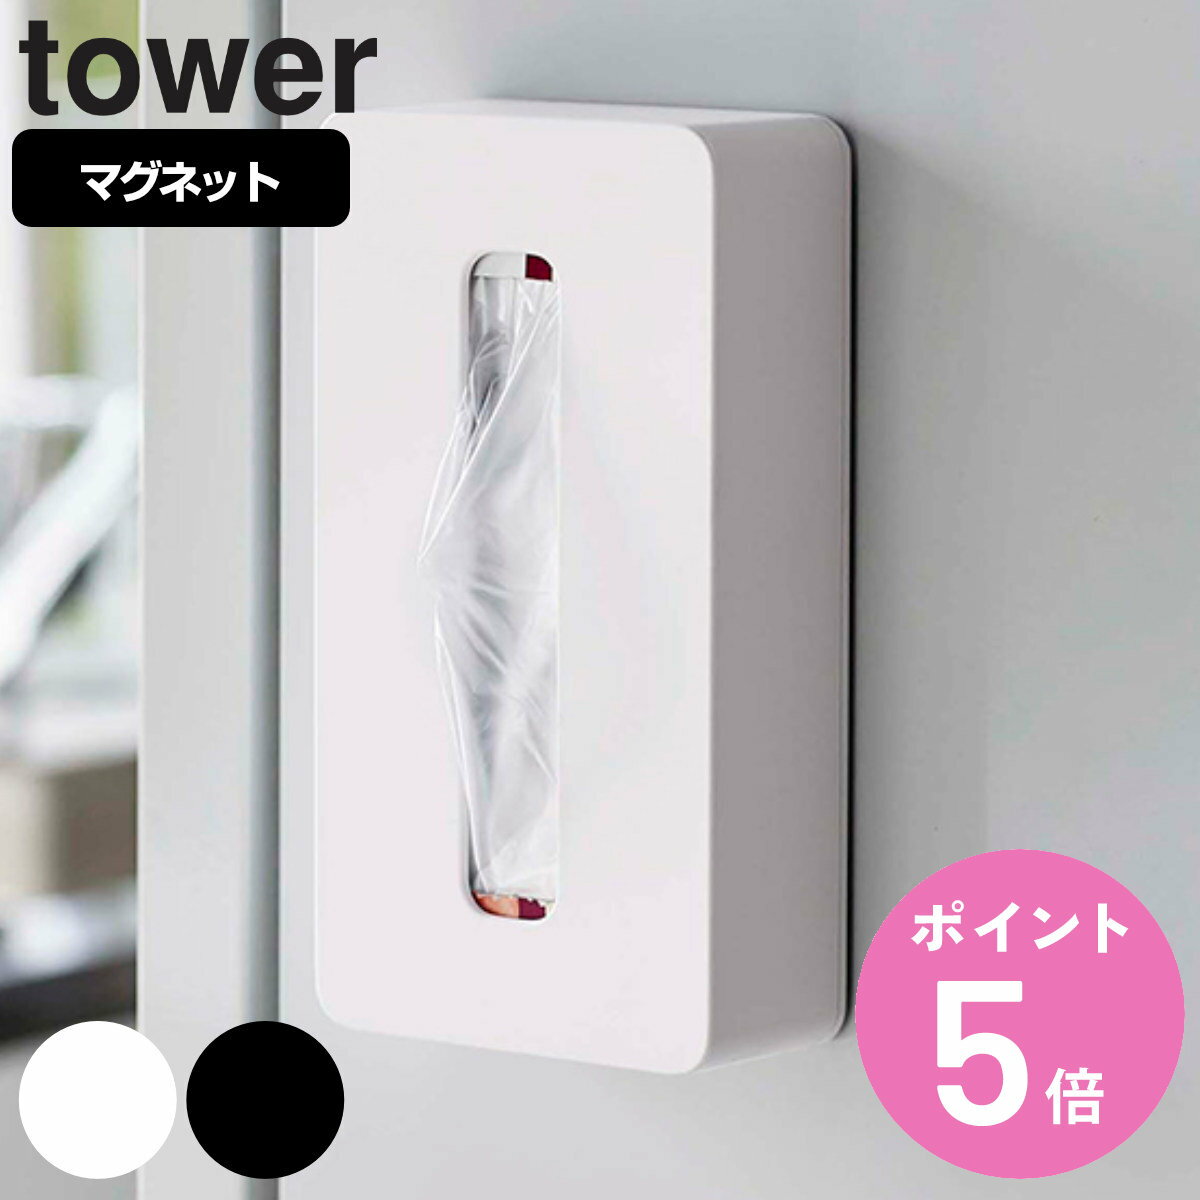 山崎実業 tower マグネットコンパクトティッシュケース タワー タワーシリーズ ペーパーホルダー マグネット ティッシュケース ソフトパック ティッシュカバー 冷蔵庫収納 ソフトパックティッ…